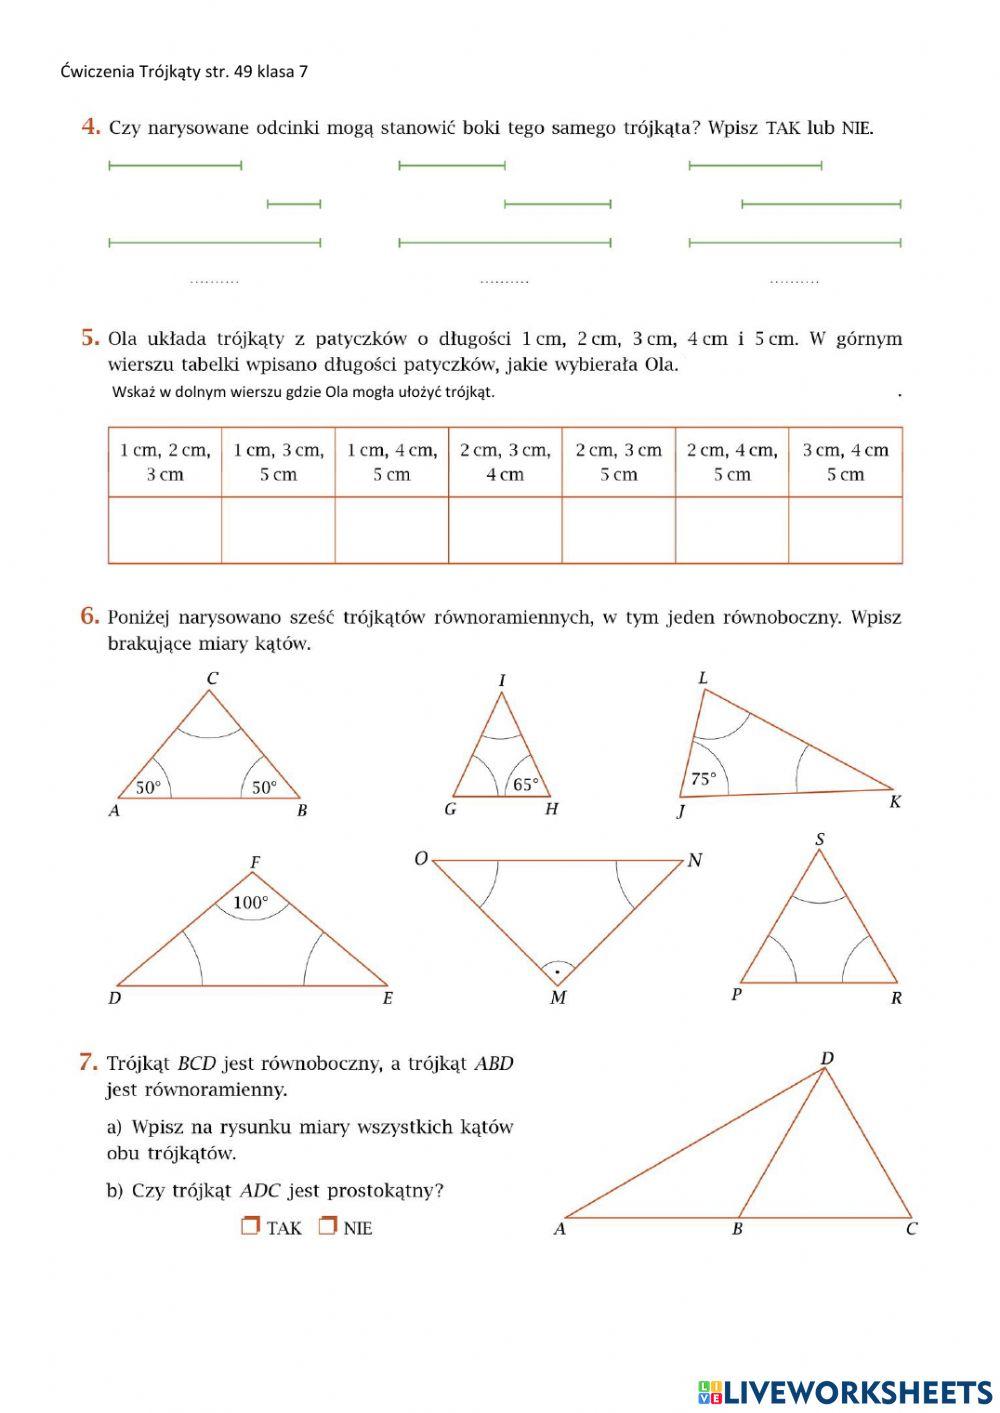 Praca domowa trójkąty ćwiczenia str. 49 klasa 7